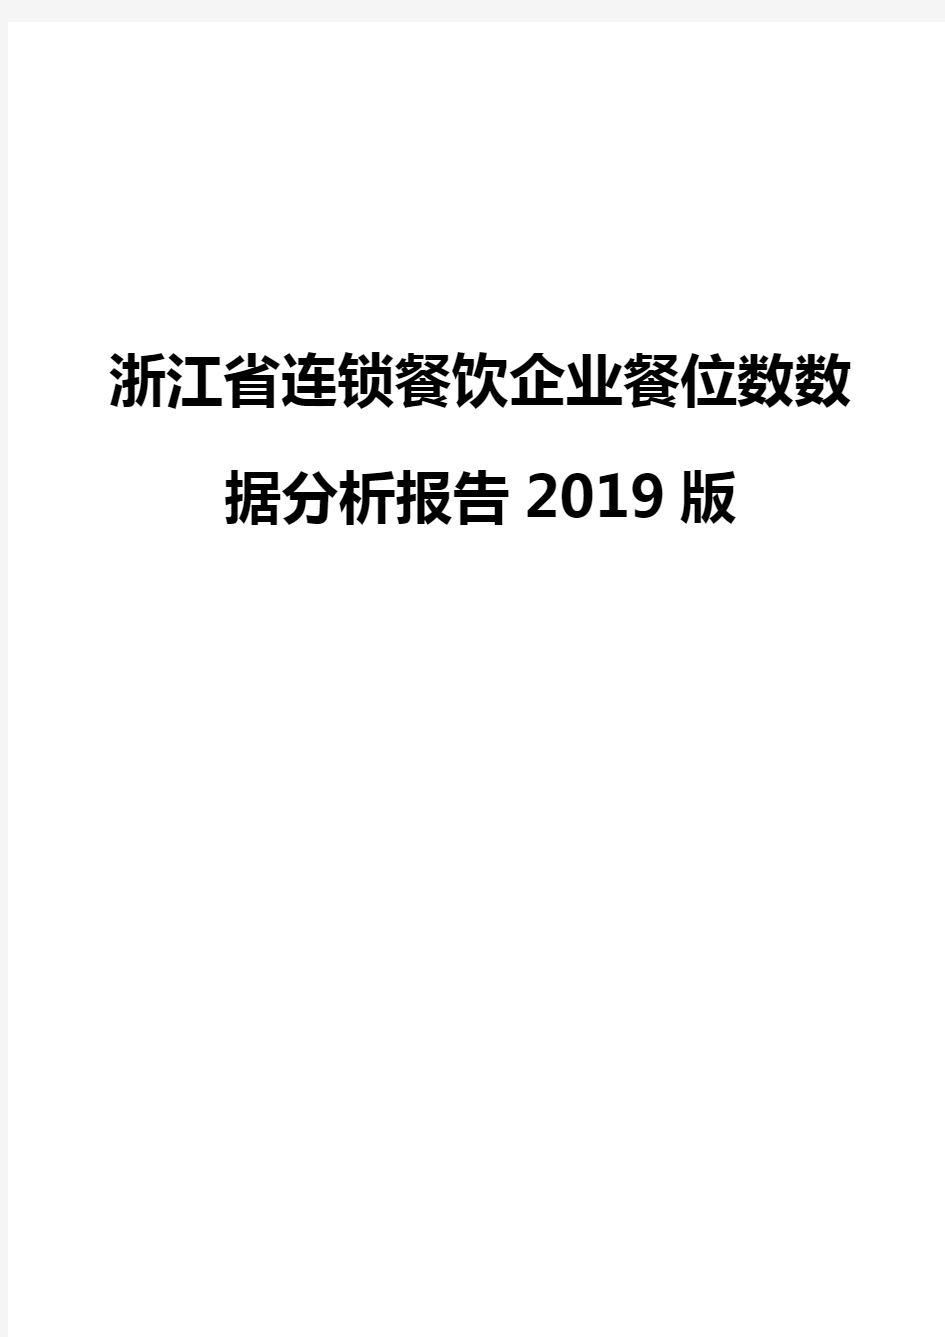 浙江省连锁餐饮企业餐位数数据分析报告2019版